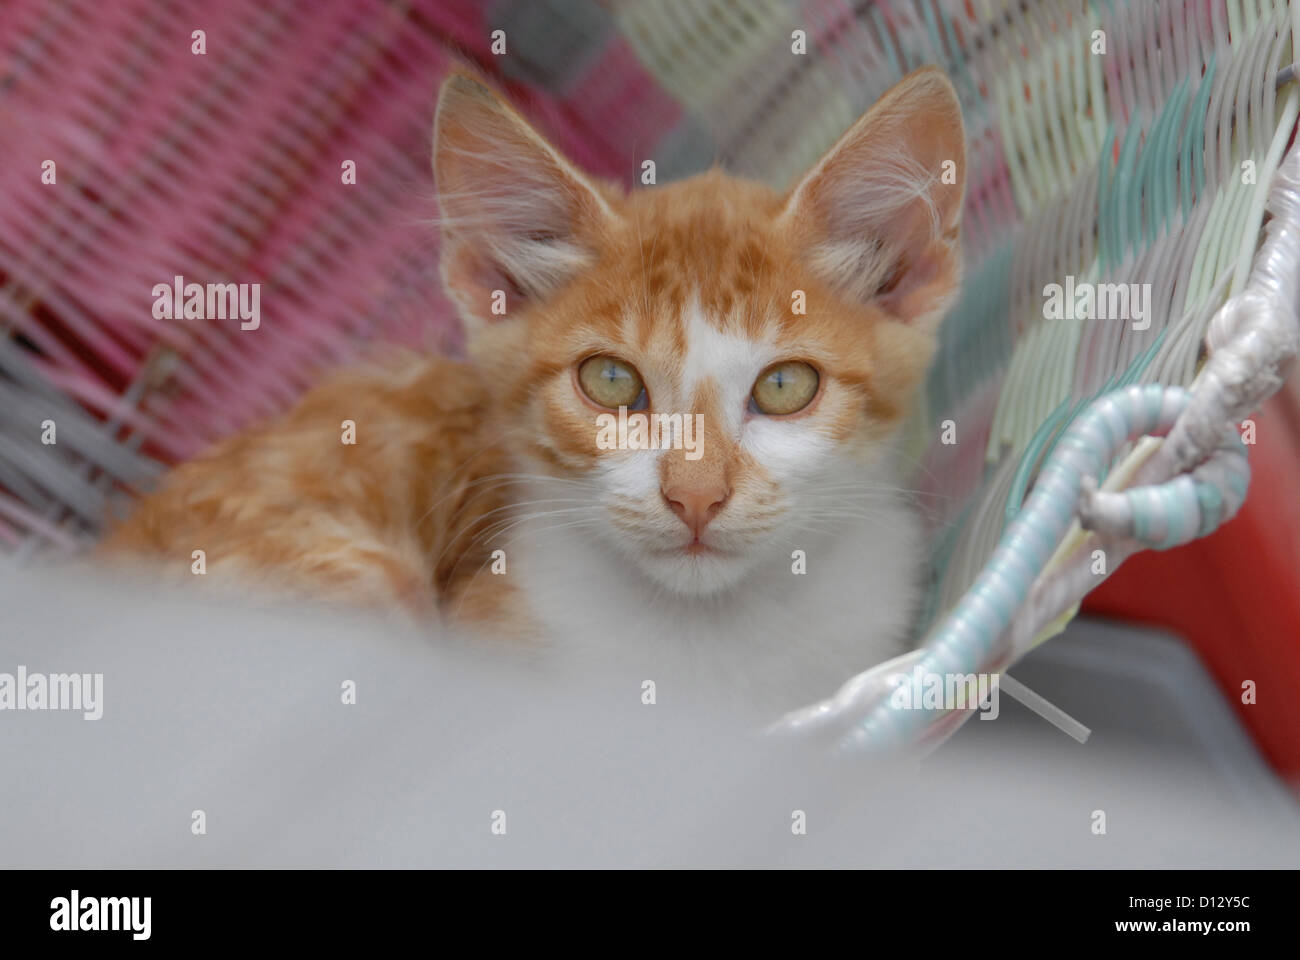 junges Hauskätzchen, Rot Tabby und Weiss, liegt in einem Korb, Dodekanes, Griechenland, kitten, Red Tabby and White, resting in Stock Photo